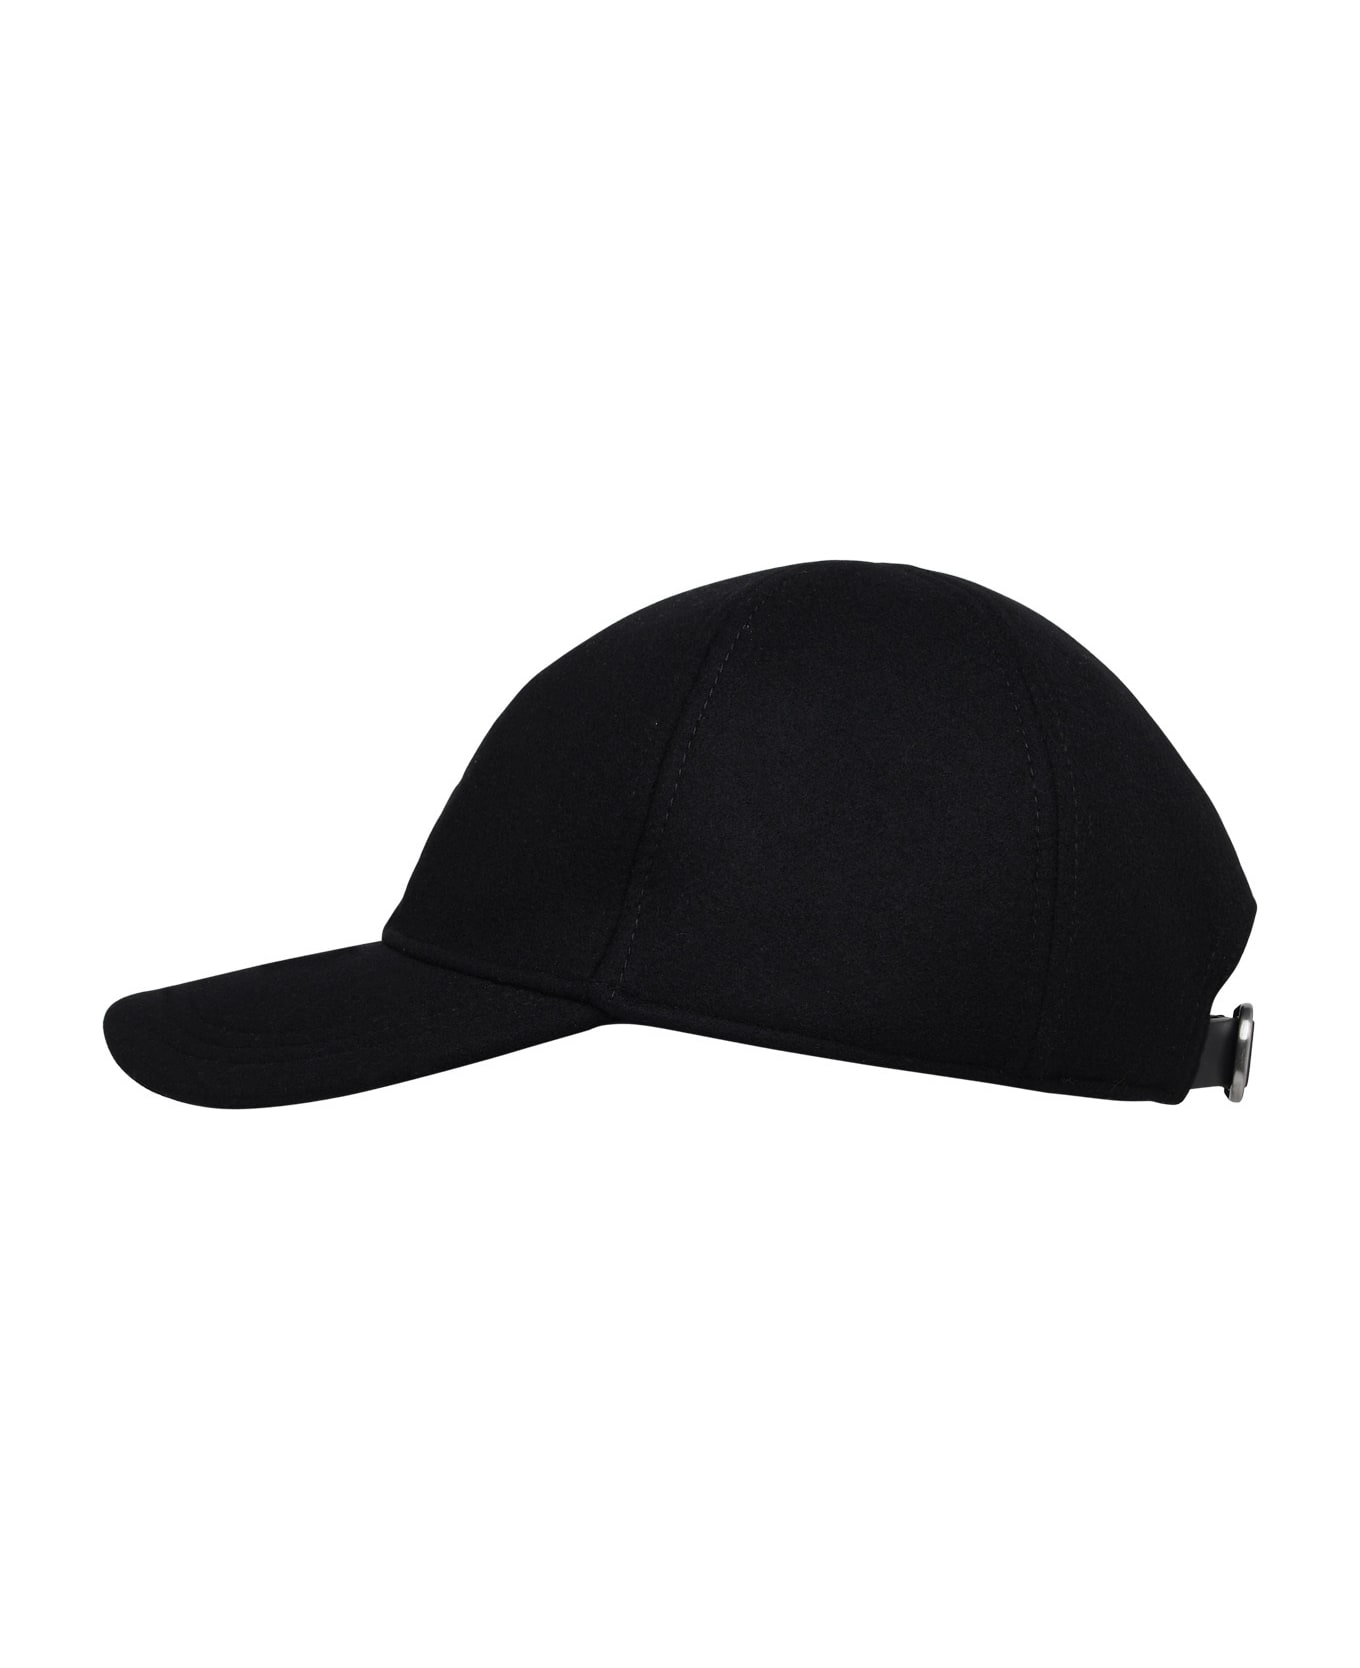 Jil Sander Black Cashmere Hat - Black 帽子